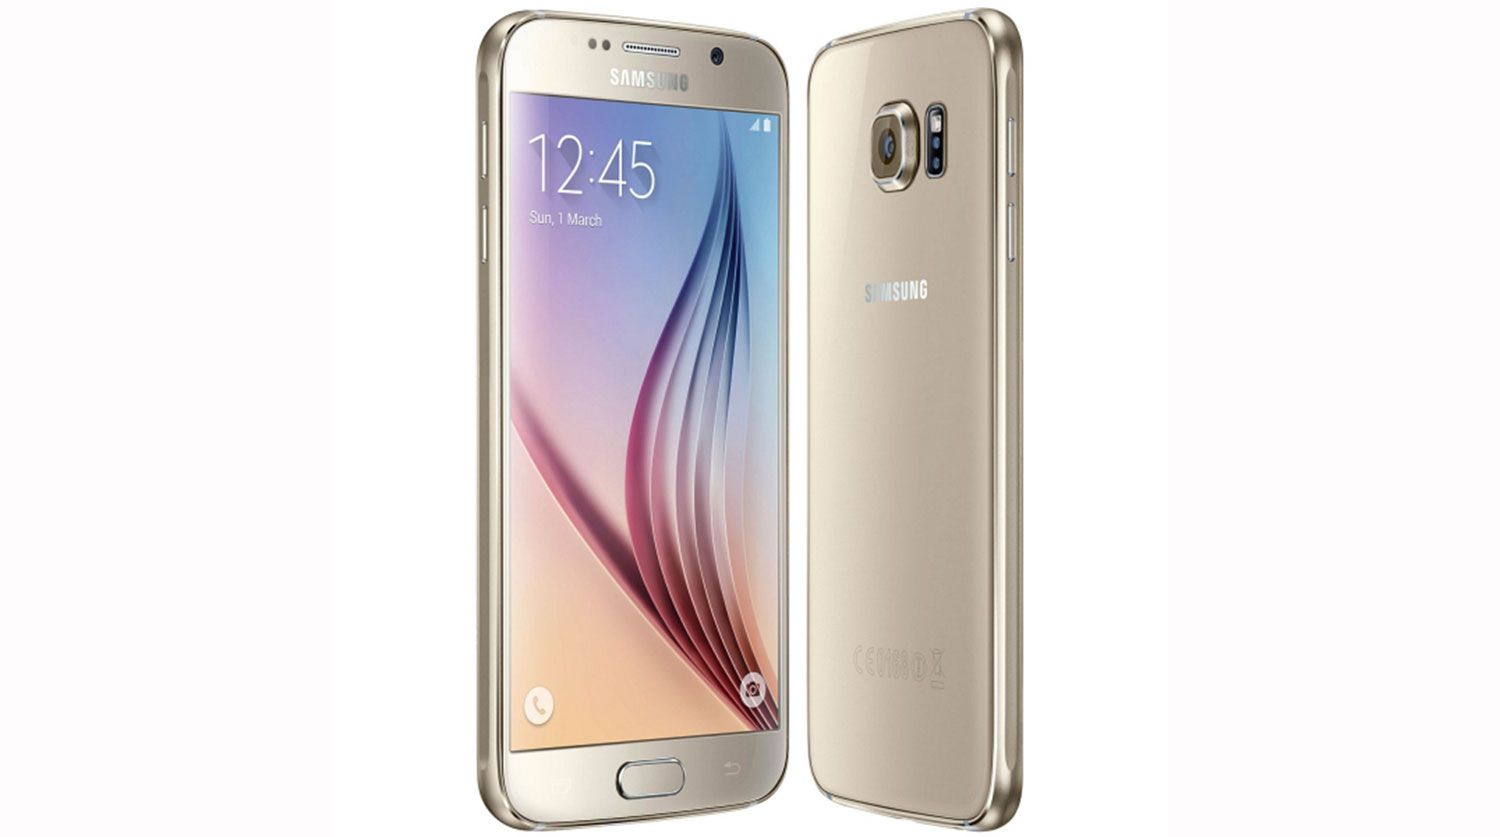 

Samsung Galaxy S6

